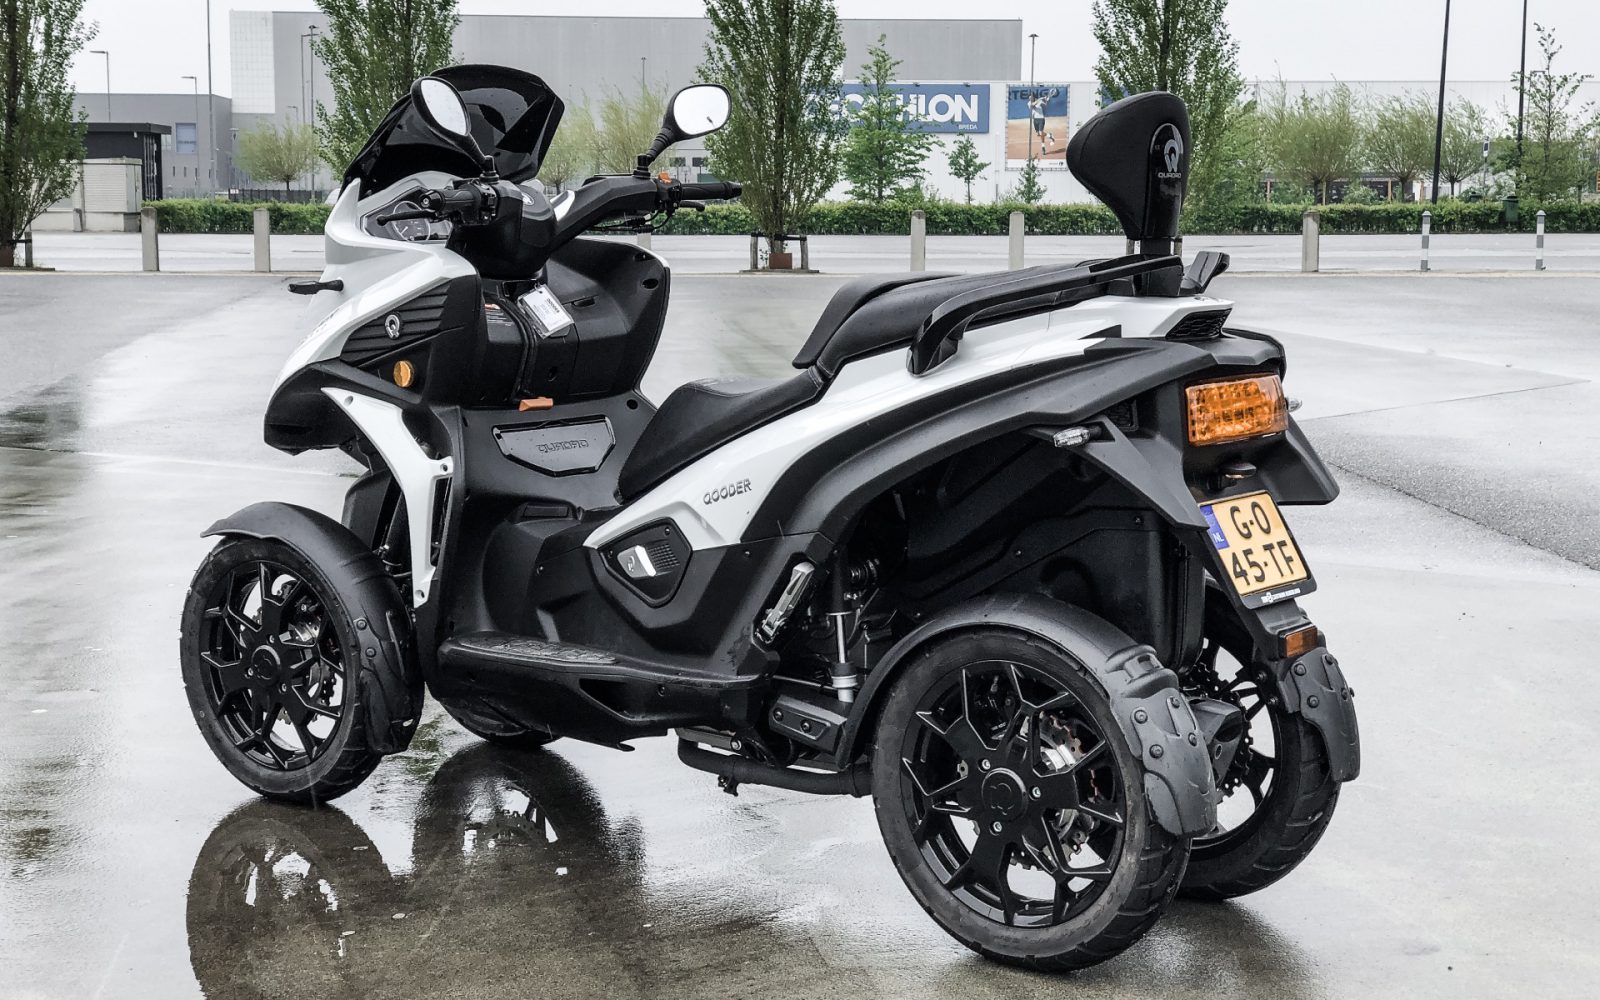 Speels Goedaardig spreken Motortest - Qooder, een 4-wielige motorscooter (2020)